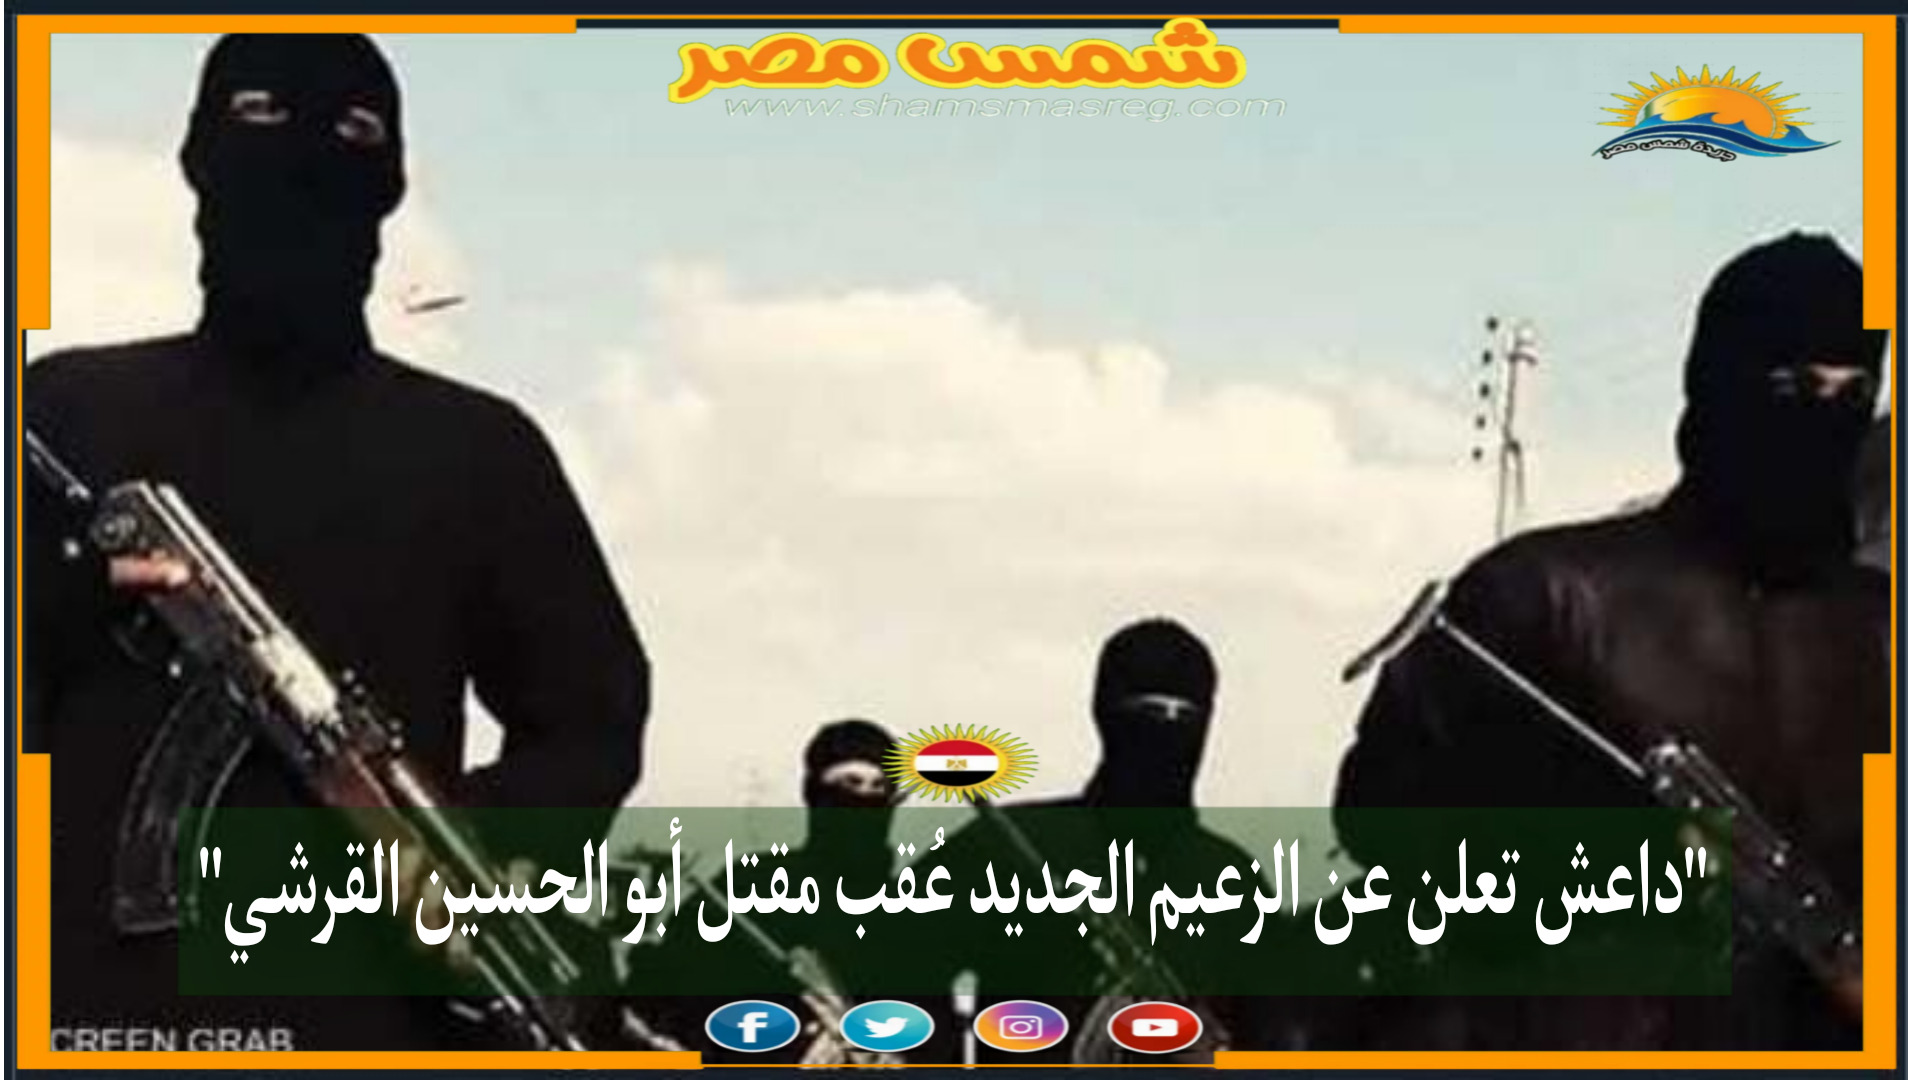 داعش تعلن اسم الزعيم الجديد عقب مقتل أبو الحسين القرشي"